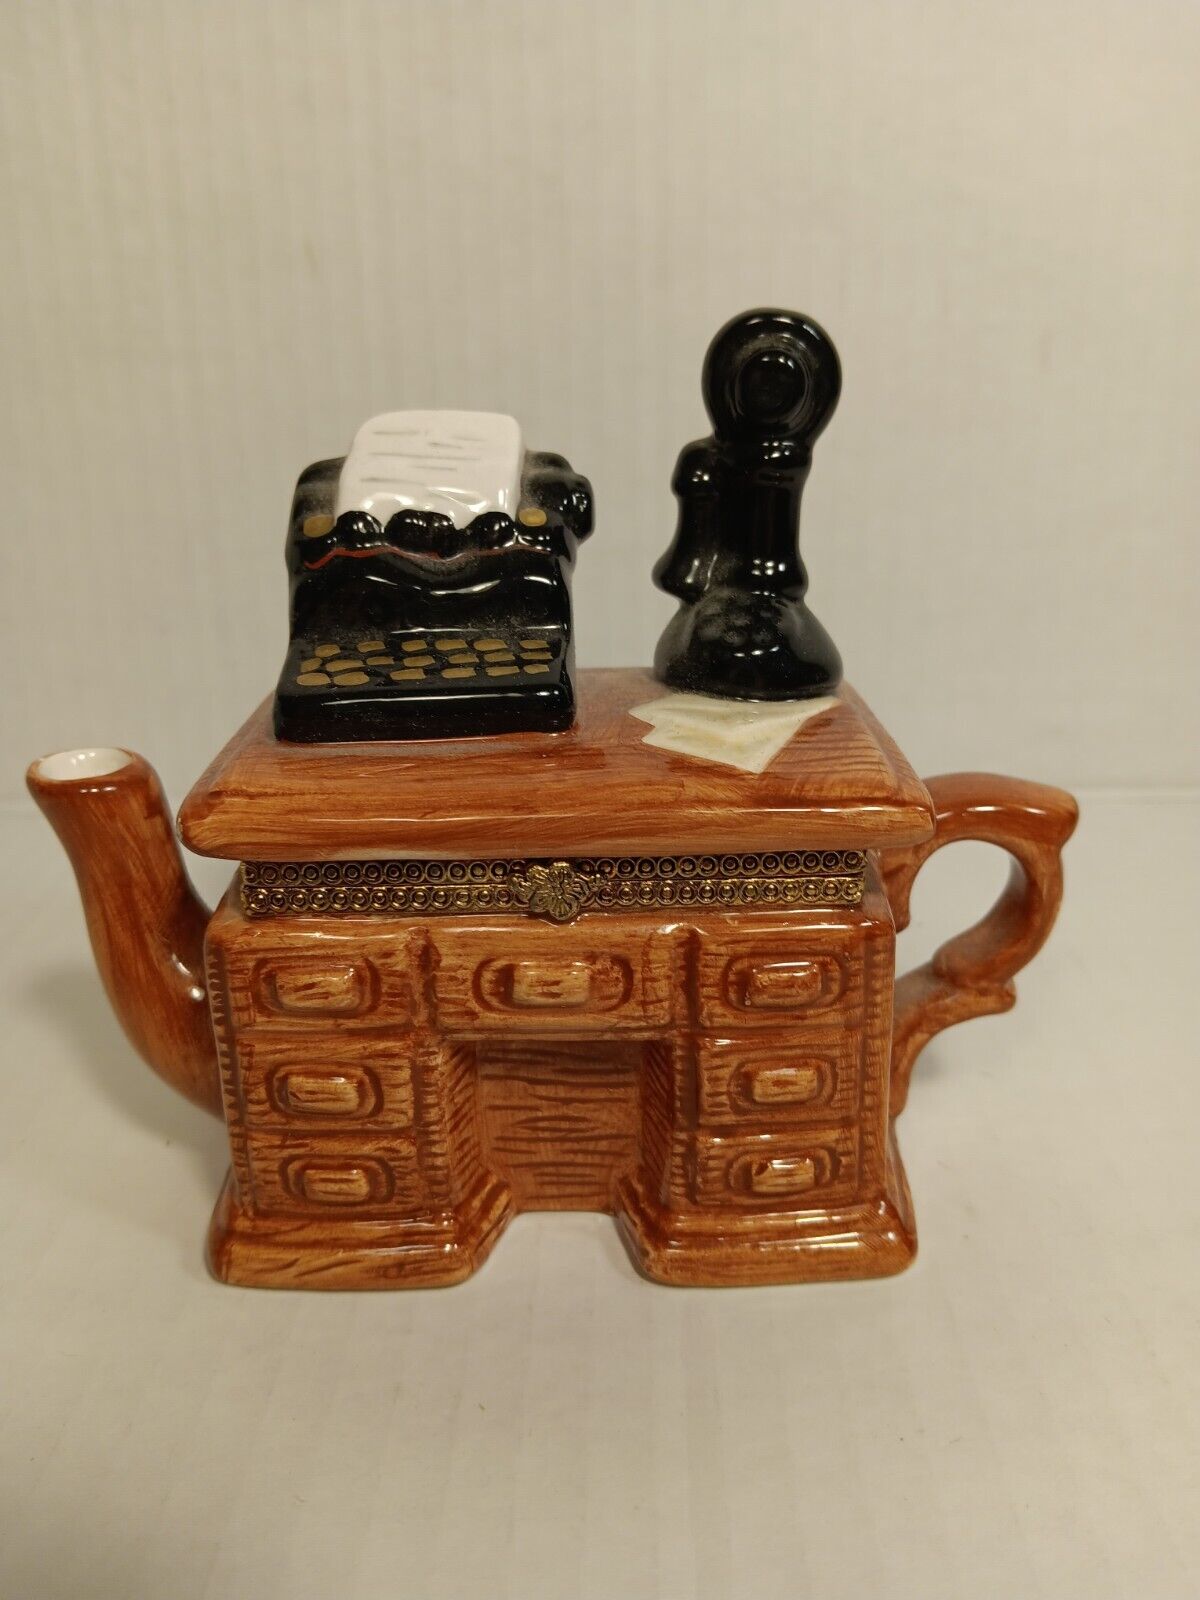 Hinged Ceramic Teapot Typewriter Desk Trinket Box